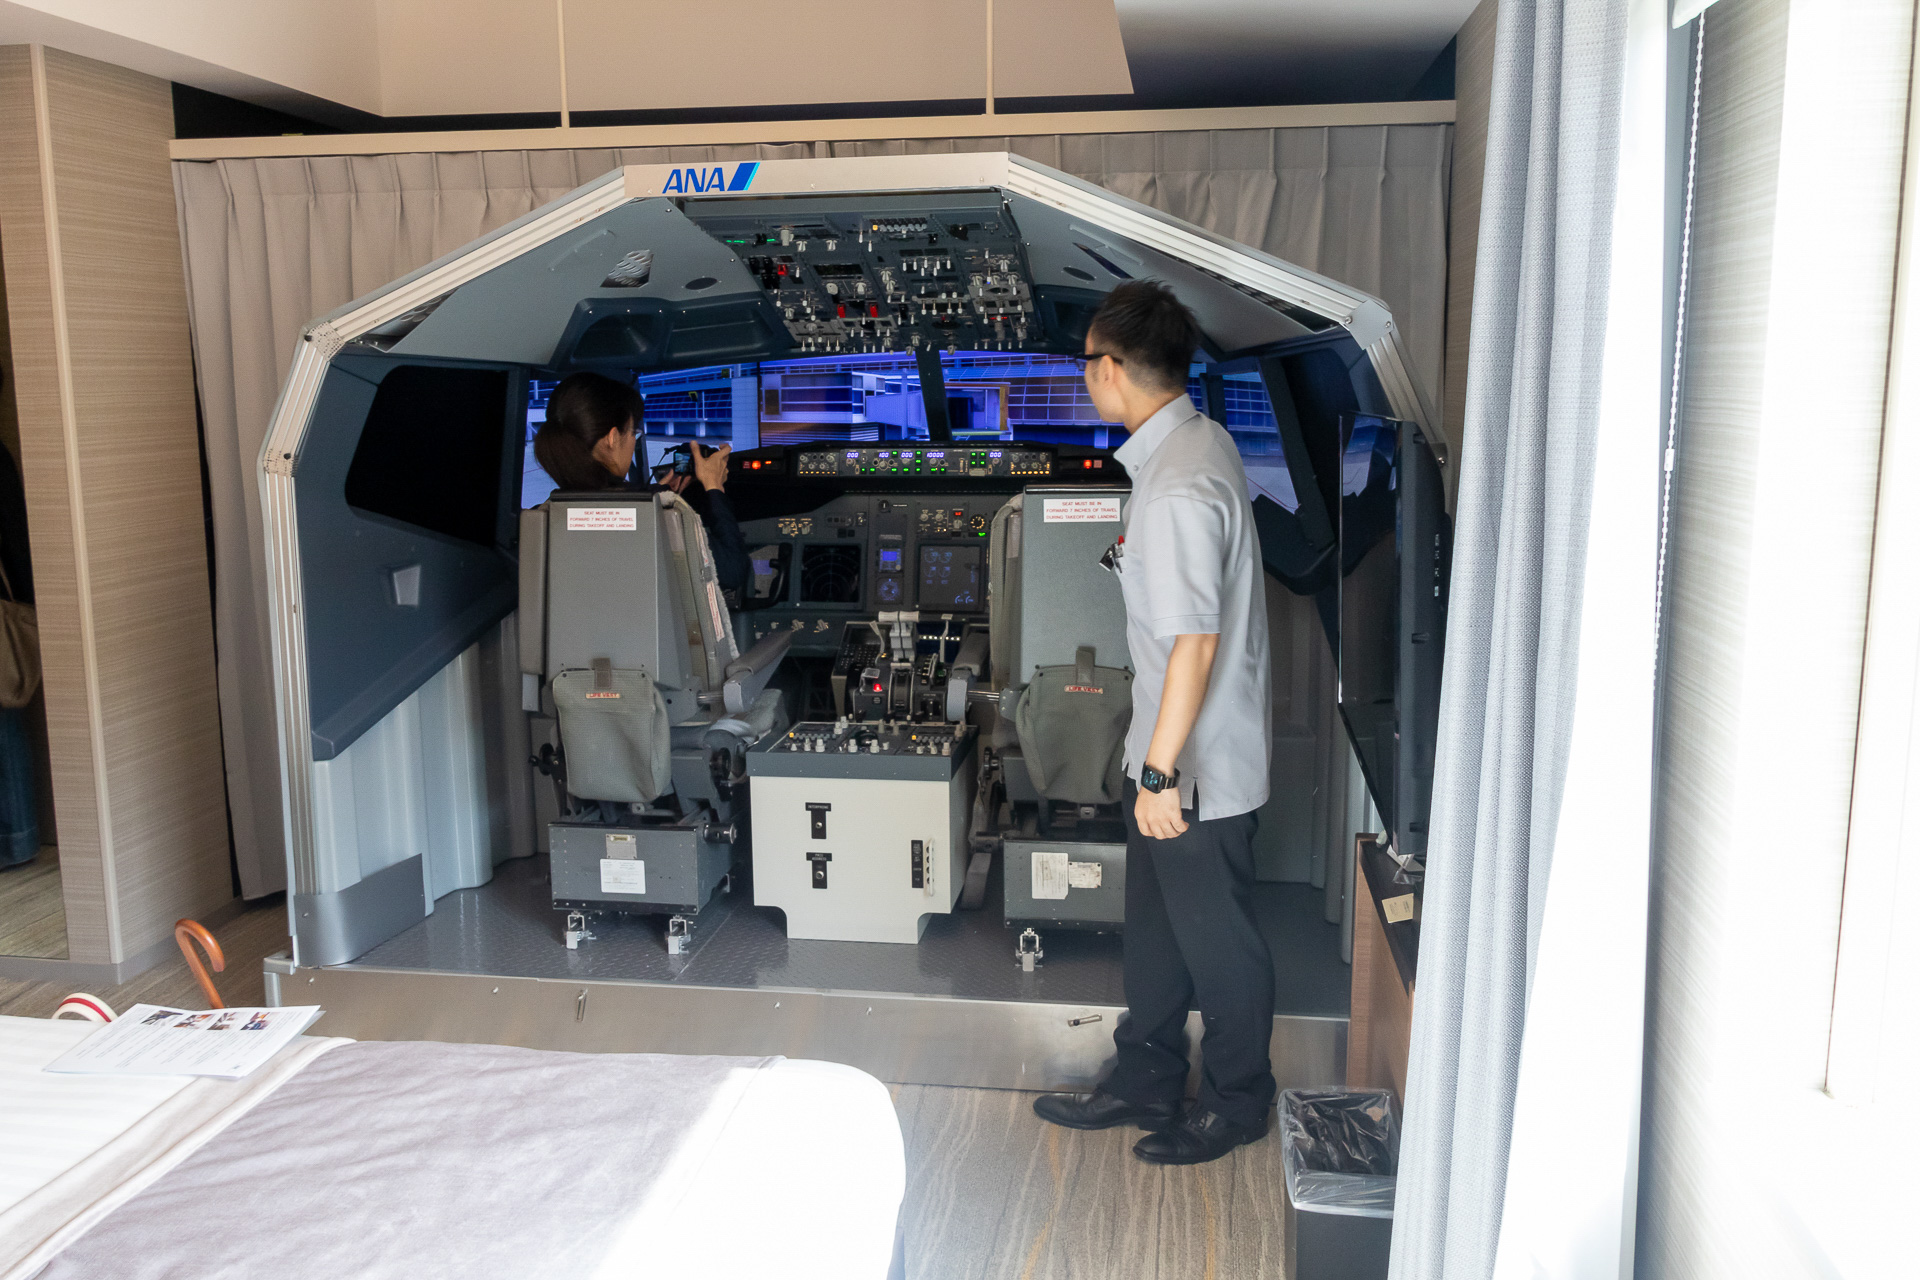 羽田エクセルホテル東急、フライトシミュレータやファーストクラスシートを設置した客室を公開。ANA元機長に操縦を教えてもらえる宿泊プランも